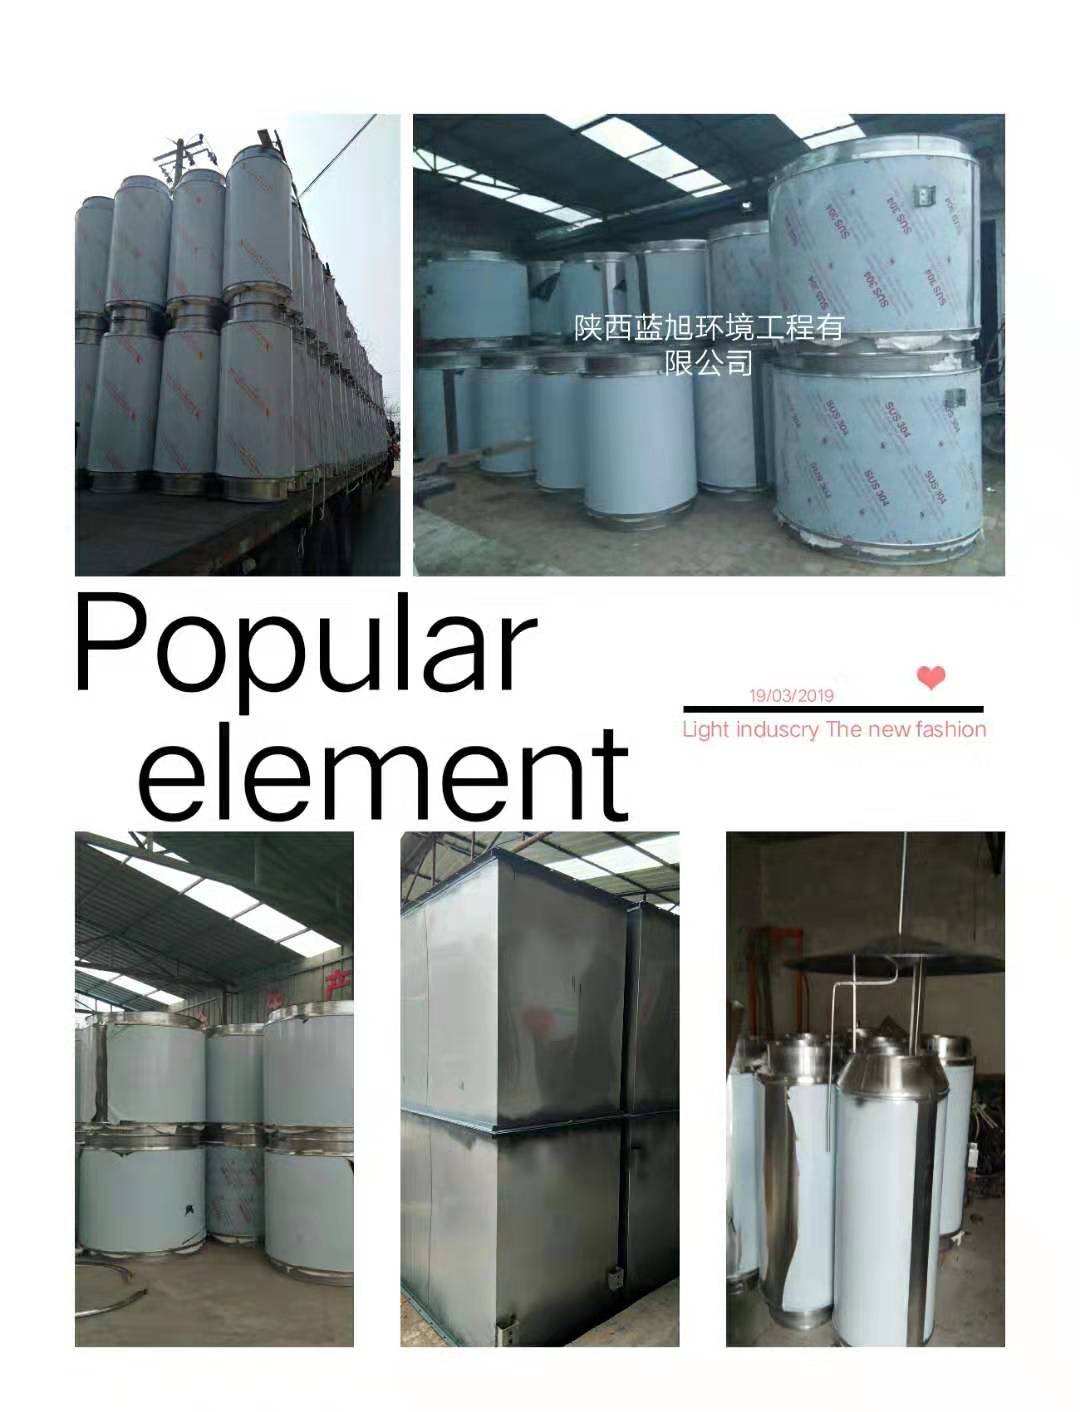 陕西蓝旭环境工程有限公司生产不锈钢烟囱